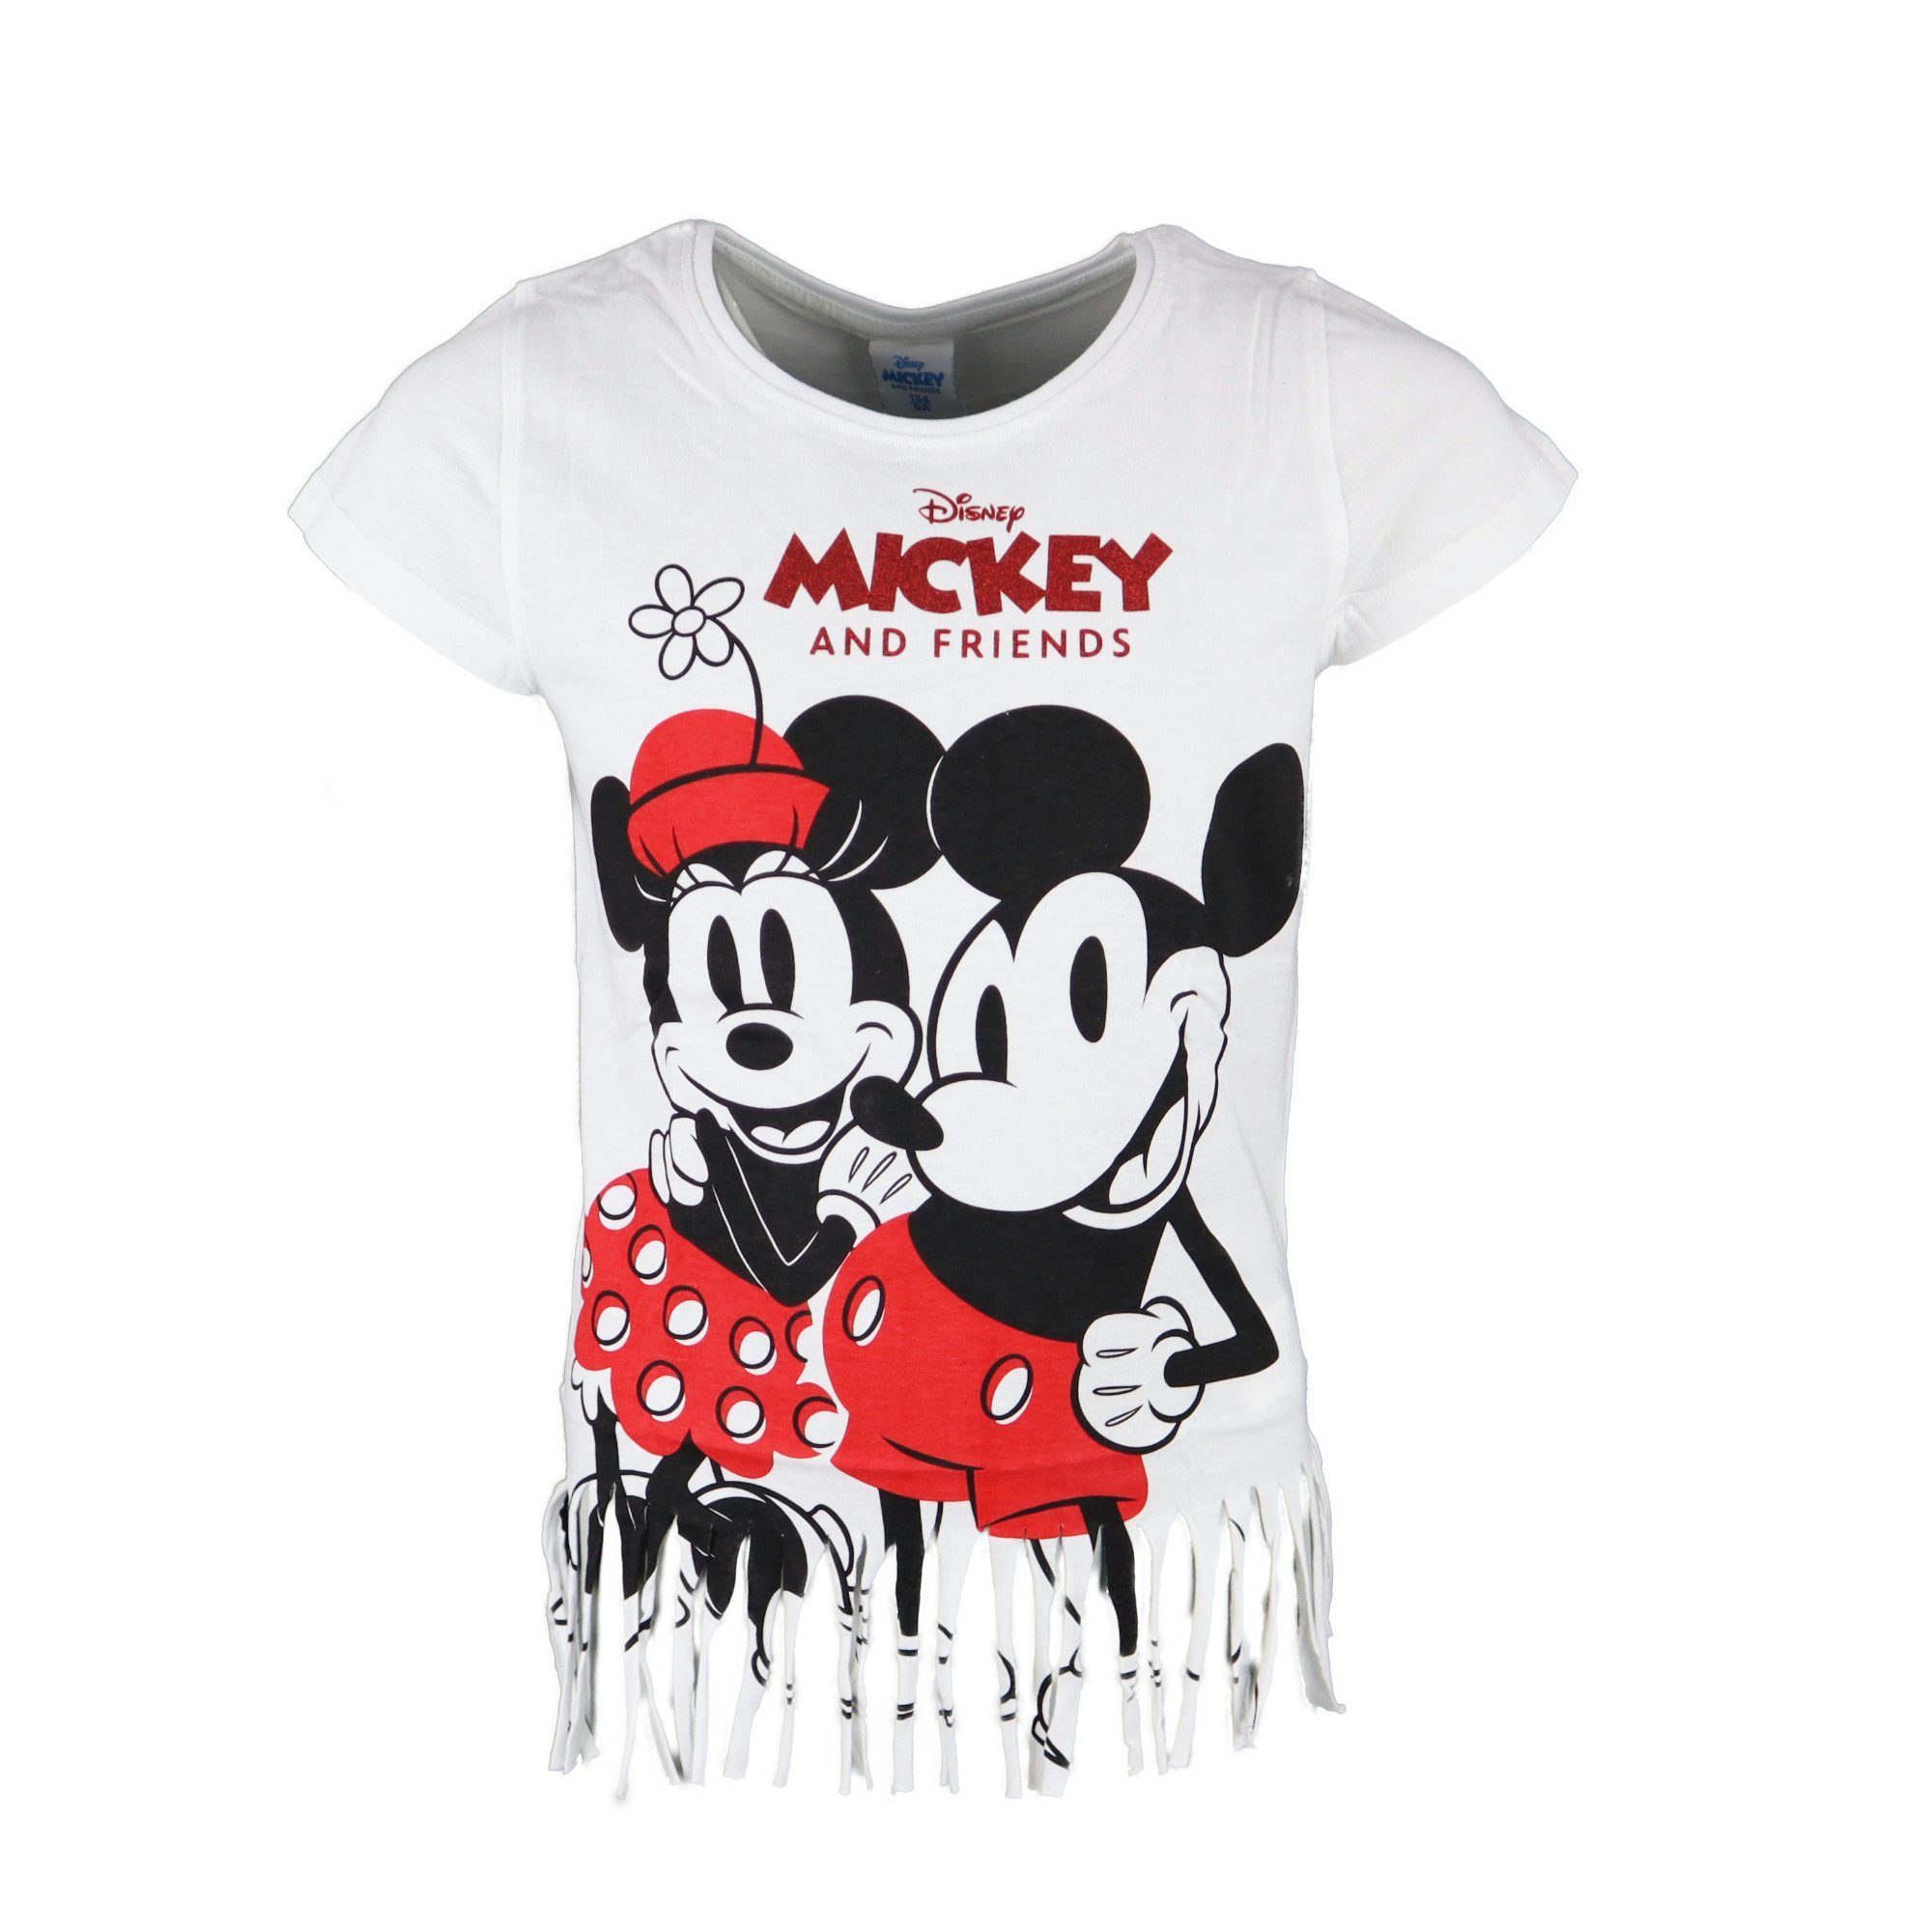 Jugend 164, Mickey Disney Mickey oder Gr. und Grau Mädchen Weiß T-Shirt bis Mouse Maus Print-Shirt Minnie 134